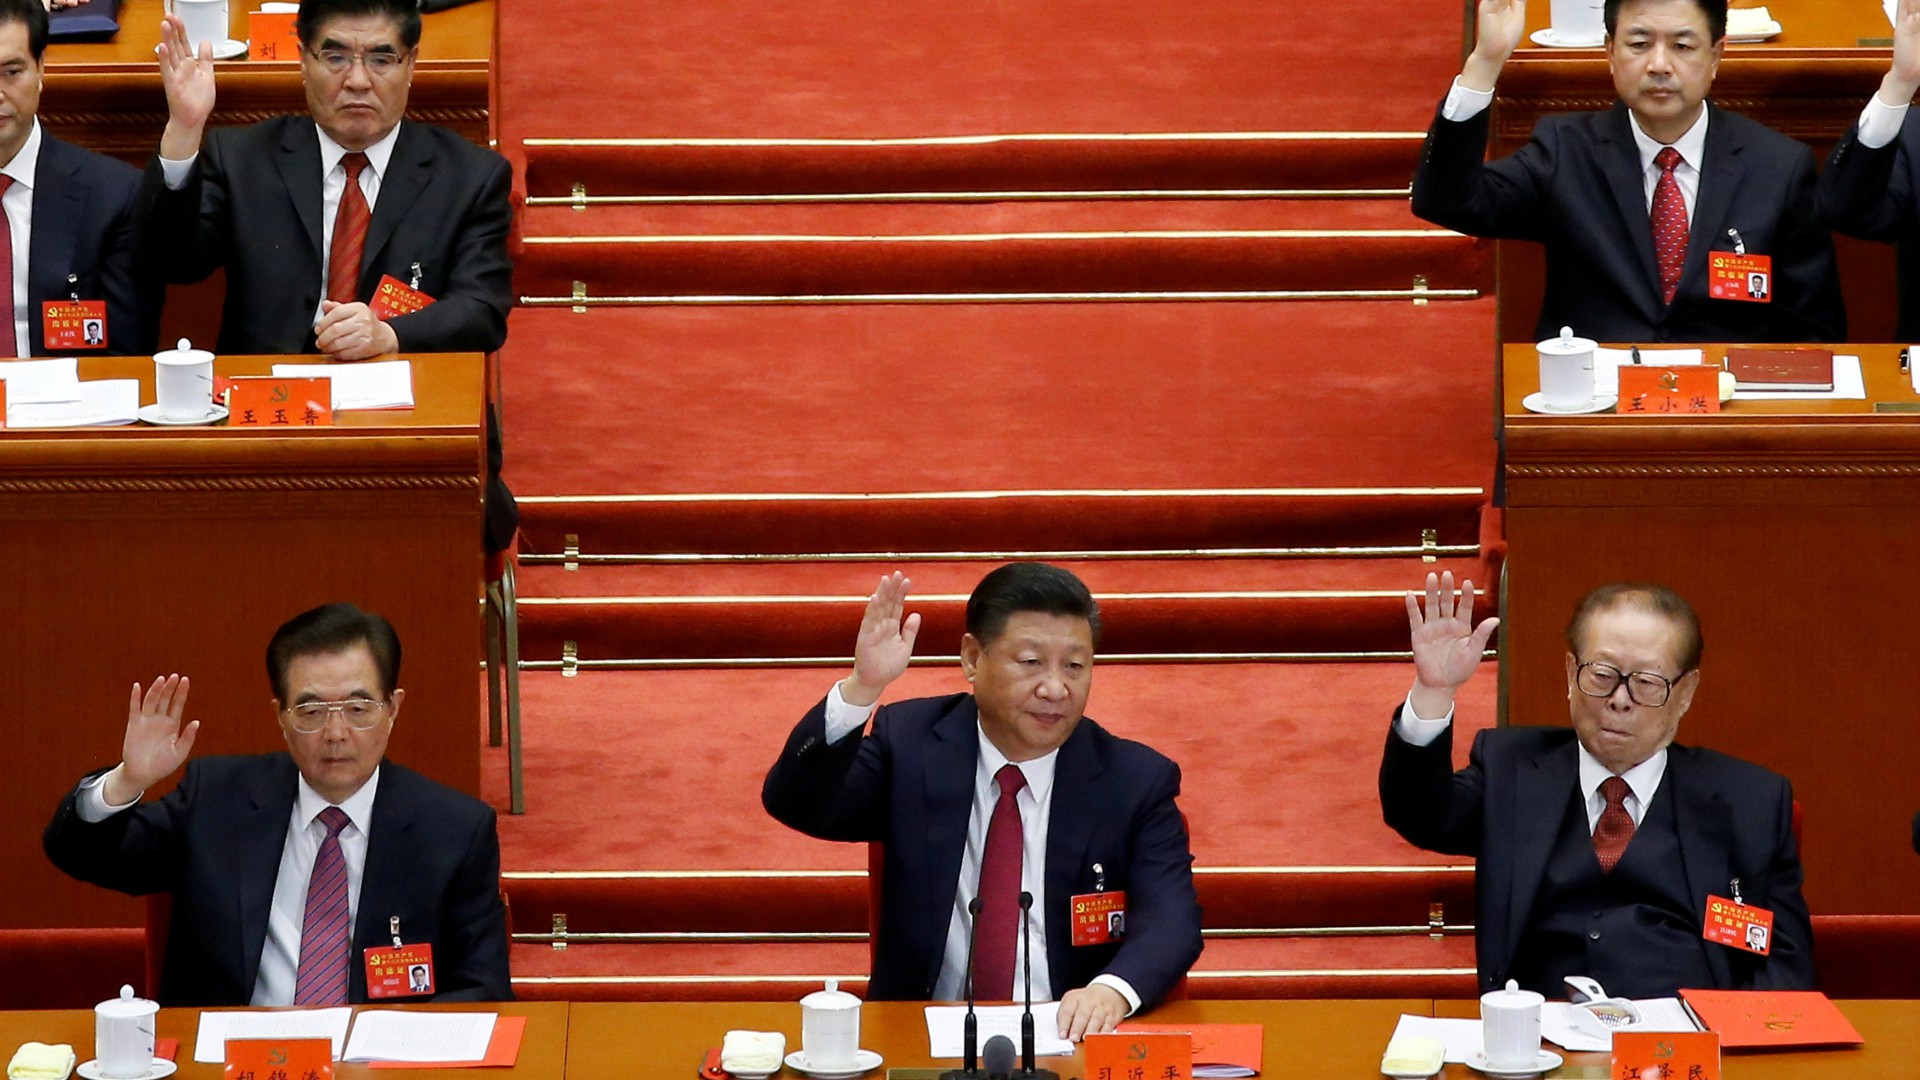 Xi Jinping entra en los estatutos del Partido Comunista de China, como Mao